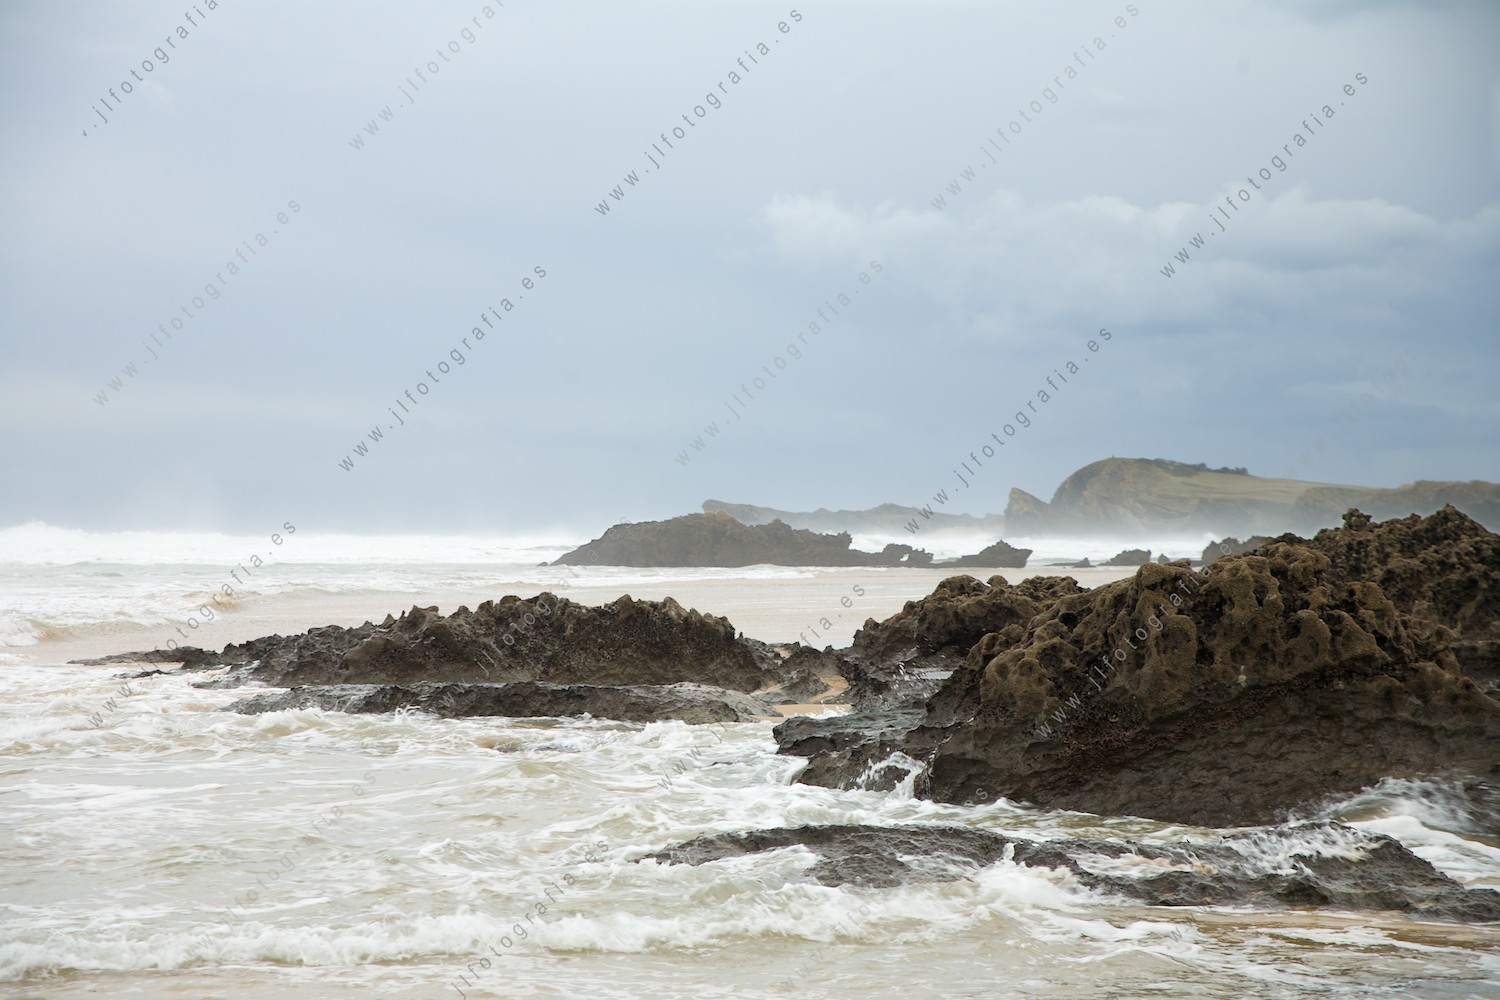 Las rocas abundan en la costa quebrada de Liencres, en cantabria, en una composición maravillosa de elementos de naturaleza muerta